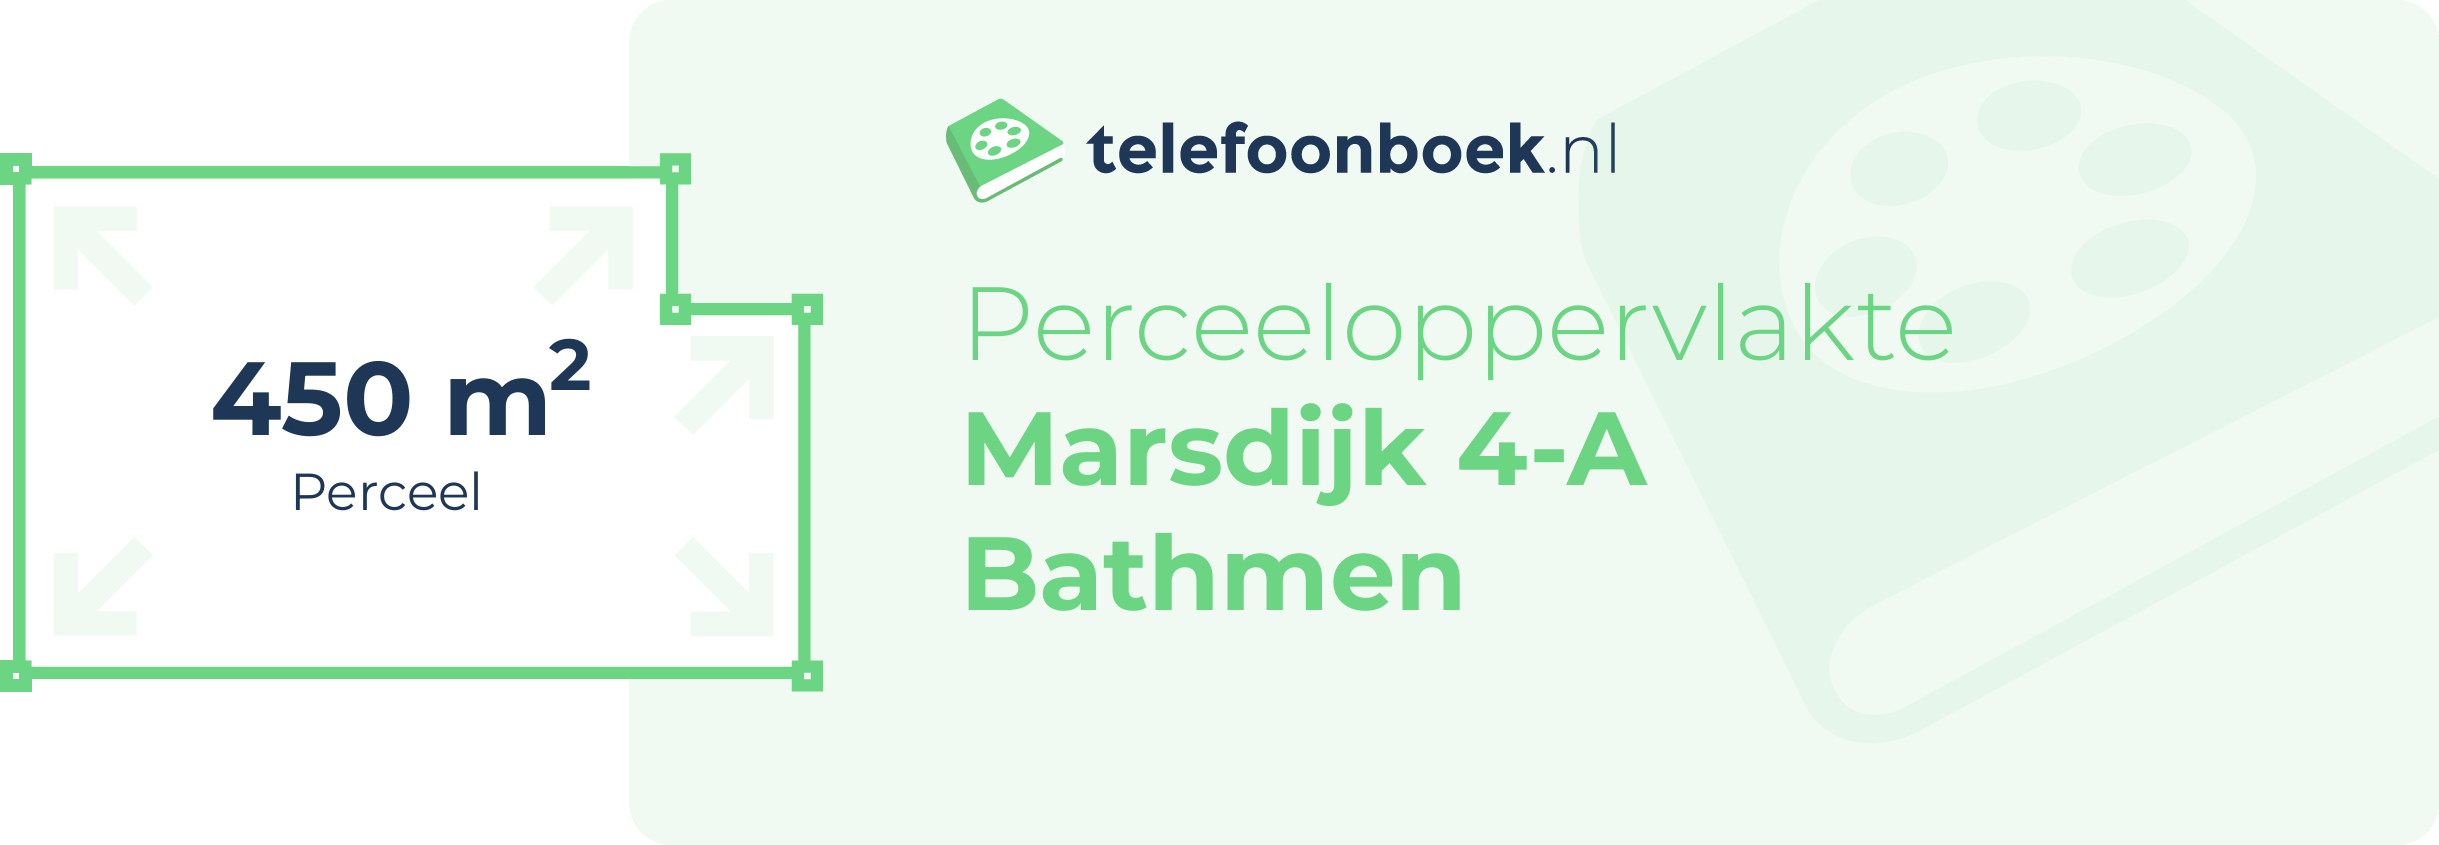 Perceeloppervlakte Marsdijk 4-A Bathmen